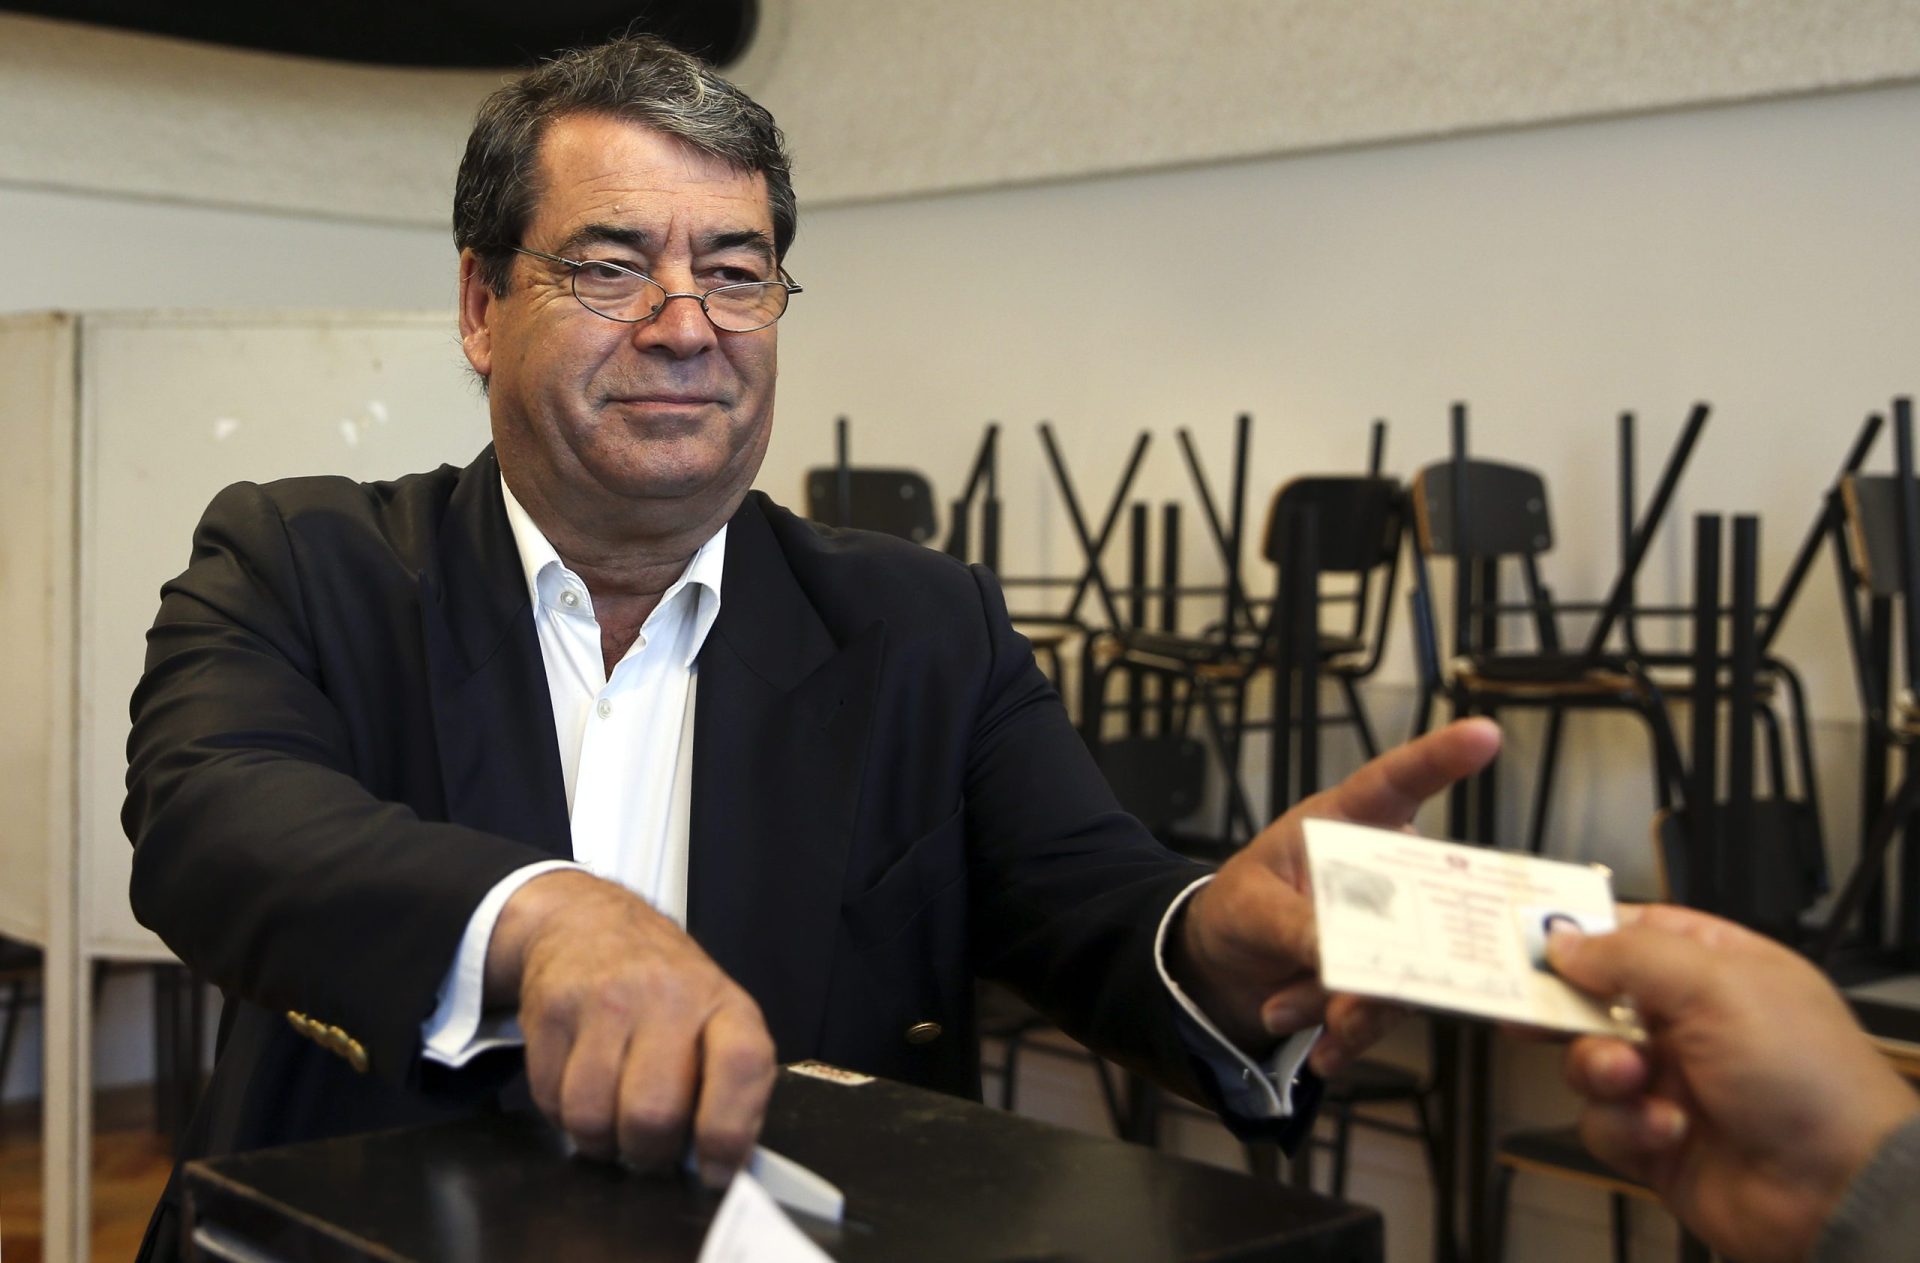 Marinho Pinto gostava de ver Ferreira Leite num Senado a refrear excessos do Parlamento